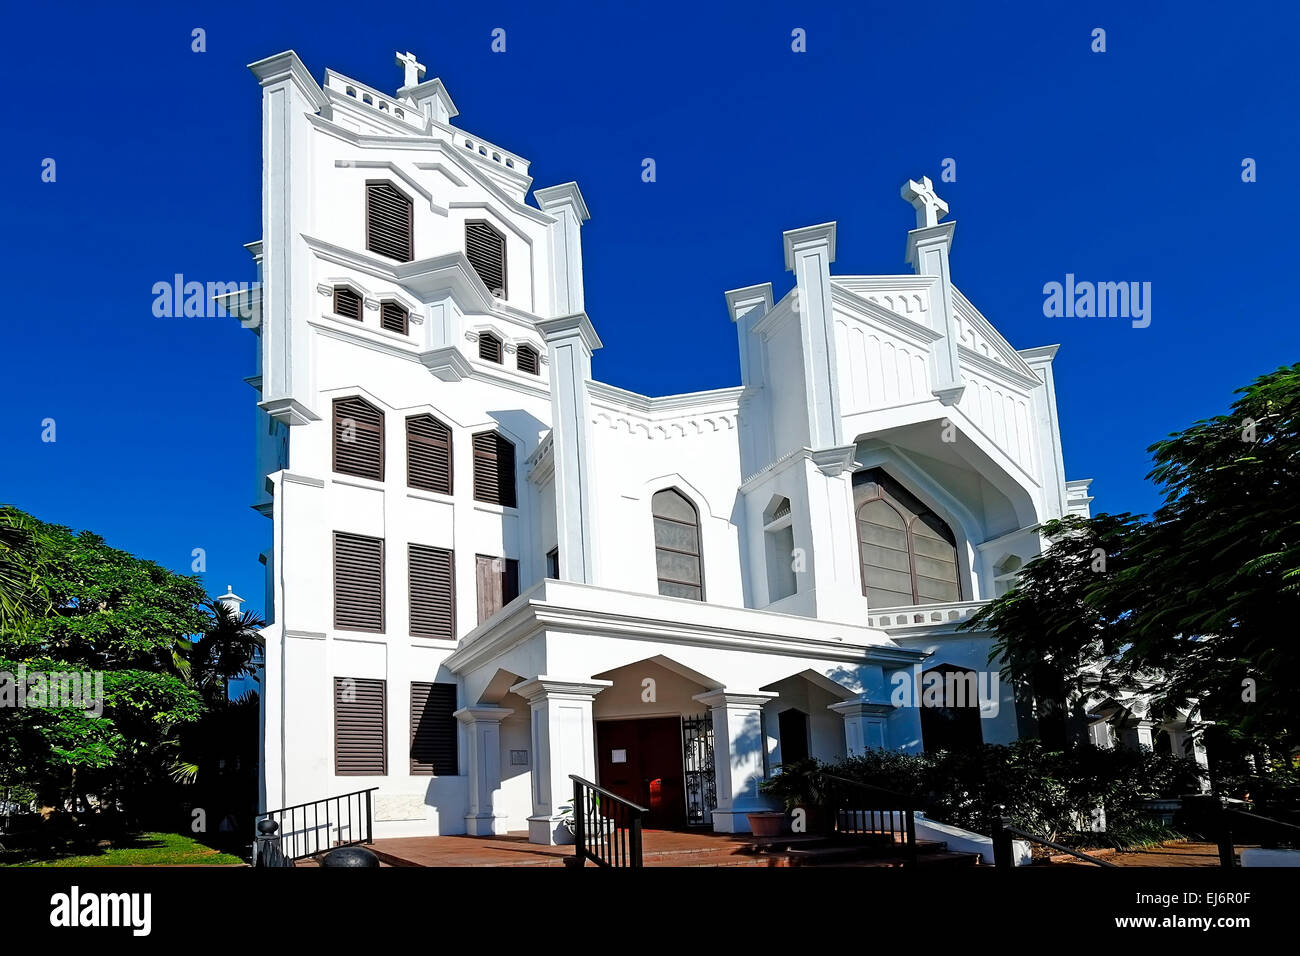 Episcopel St. Paul's Church Key West FL Floride destination pour l'ouest de Tampa Crusie Caraïbes Banque D'Images